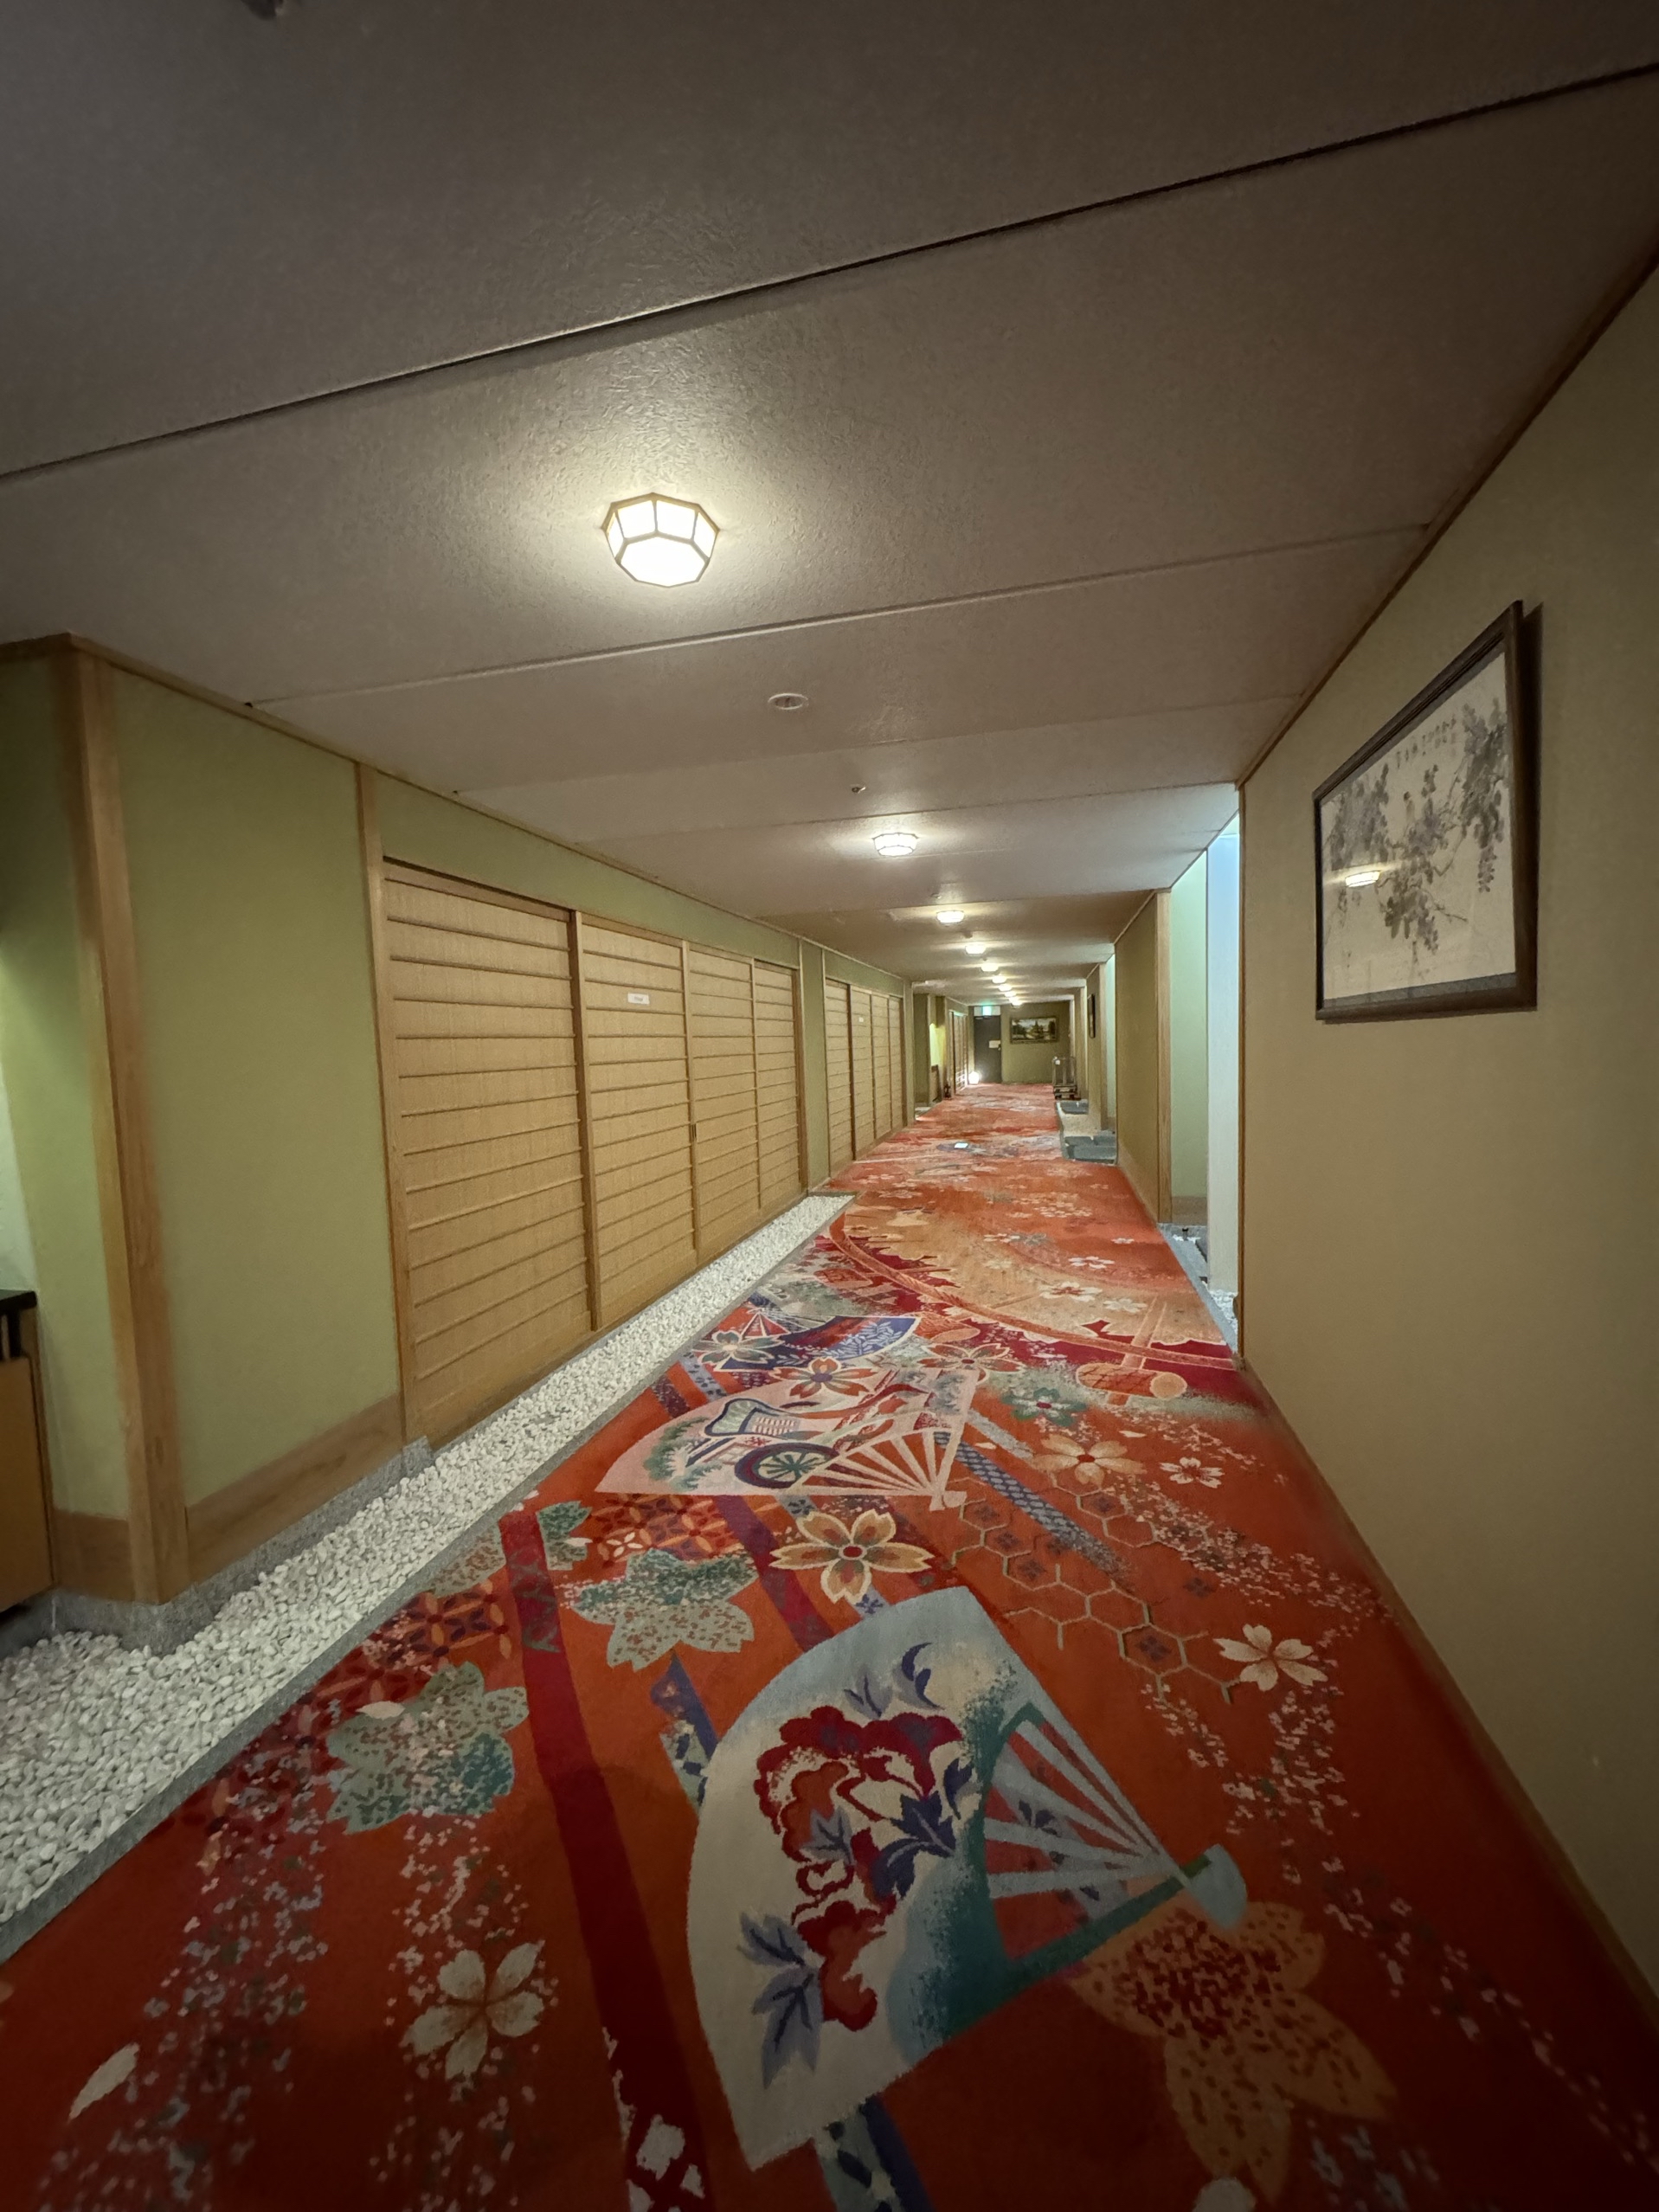 酒店大厅装修风格有点奢华中带着没落的感觉，房间的走道布置很美，房间应该是新装修的，和洋式双床房也很宽